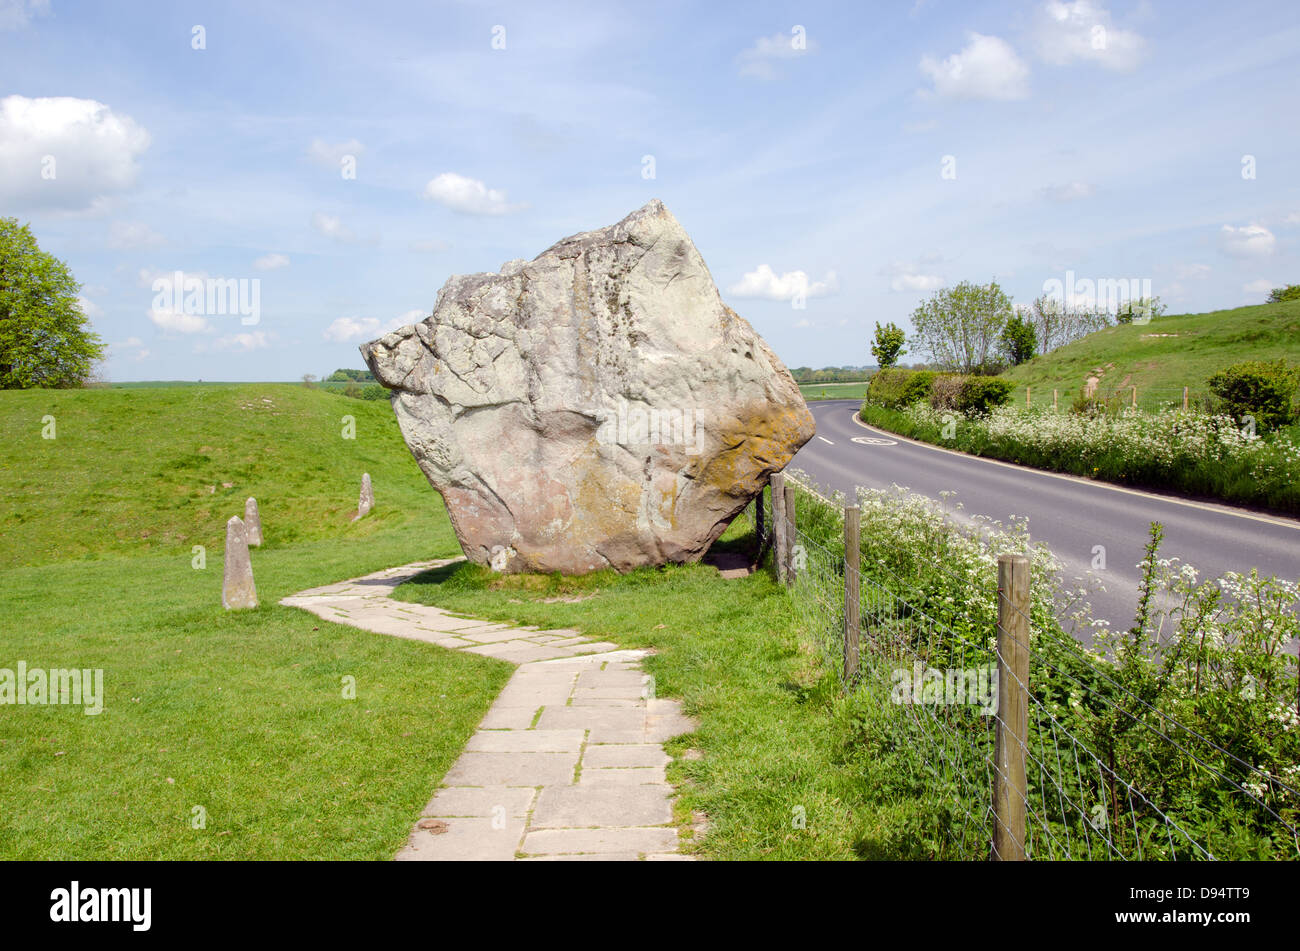 Stehenden Steinen in Avebury, Europas größten prähistorischen Steinkreis Stockfoto